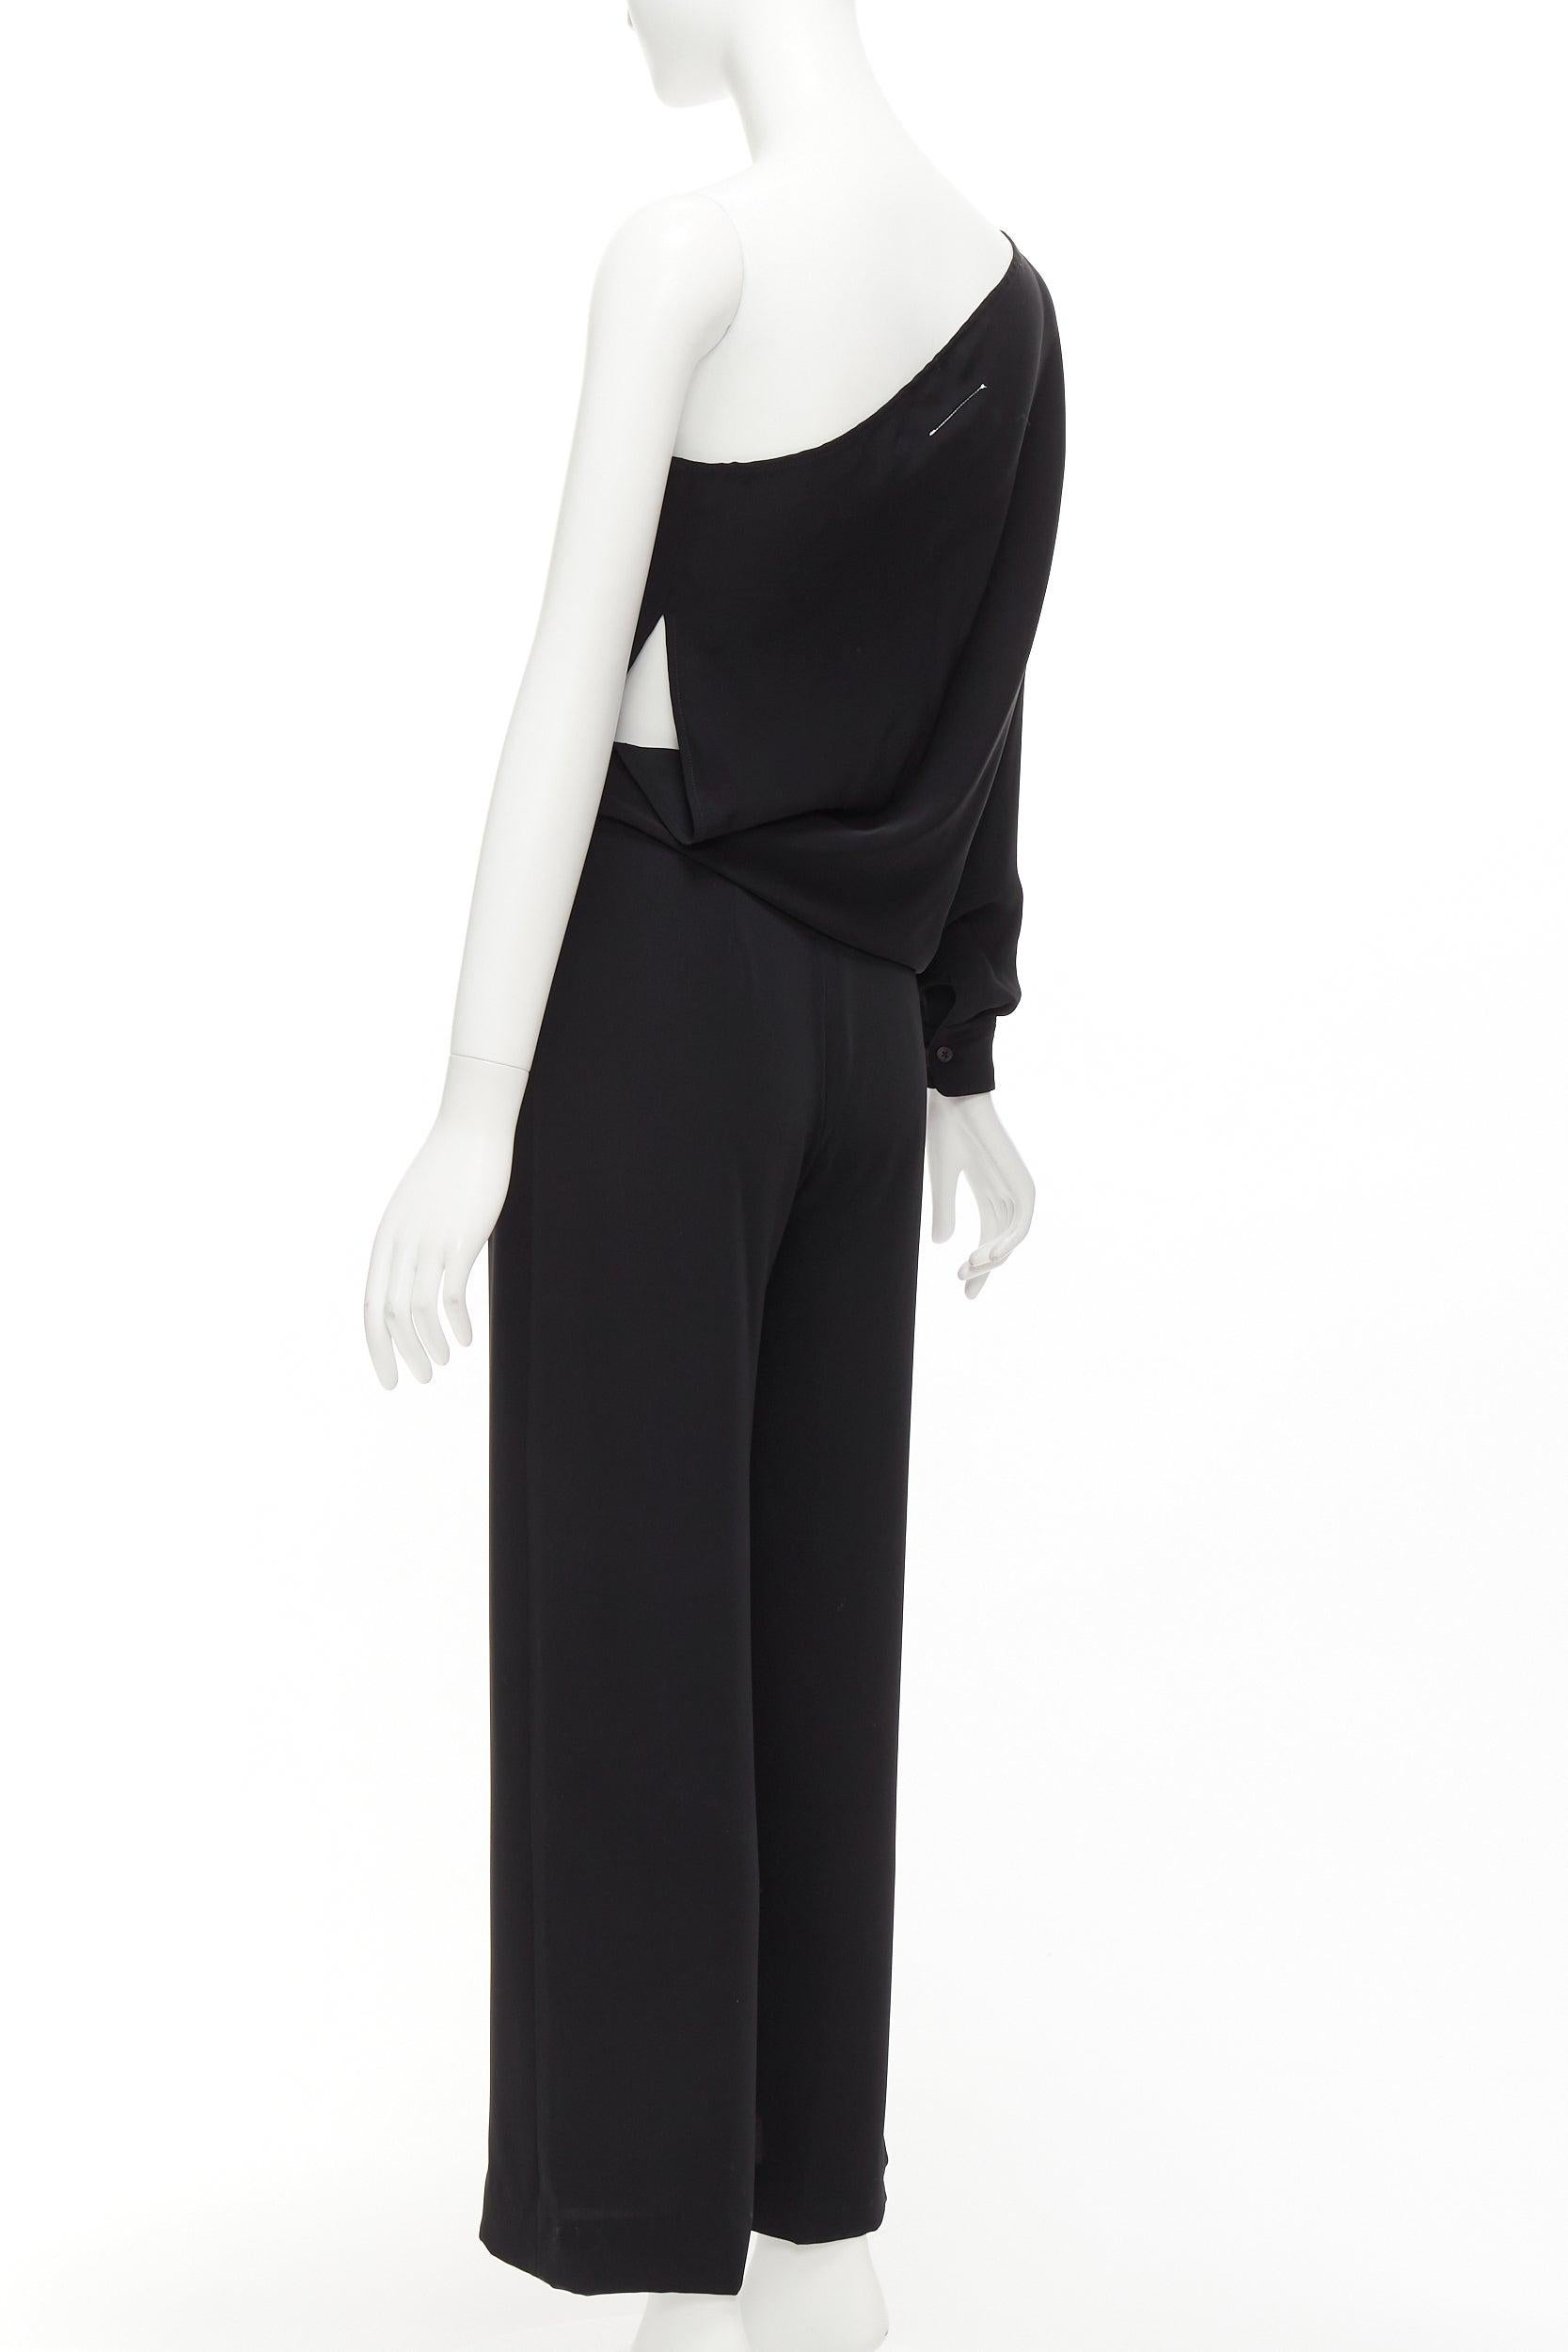 MAISON MARGIELA MM6 black one shoulder drape cut cropped jumpsuit FR36 S For Sale 2